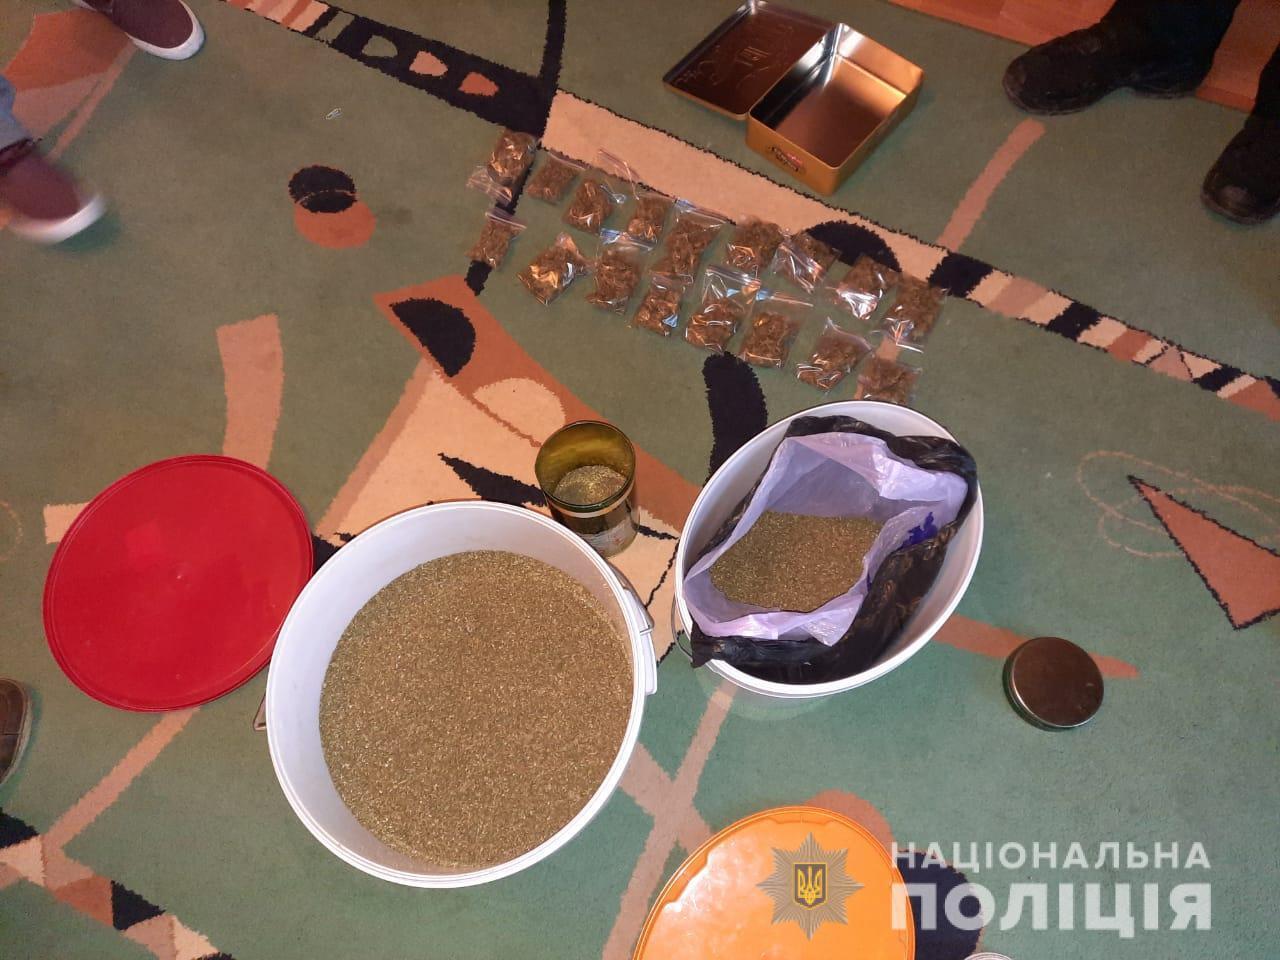 Правоохоронці викрили групу осіб у незаконному збуті наркотичних засобів на території Одещини